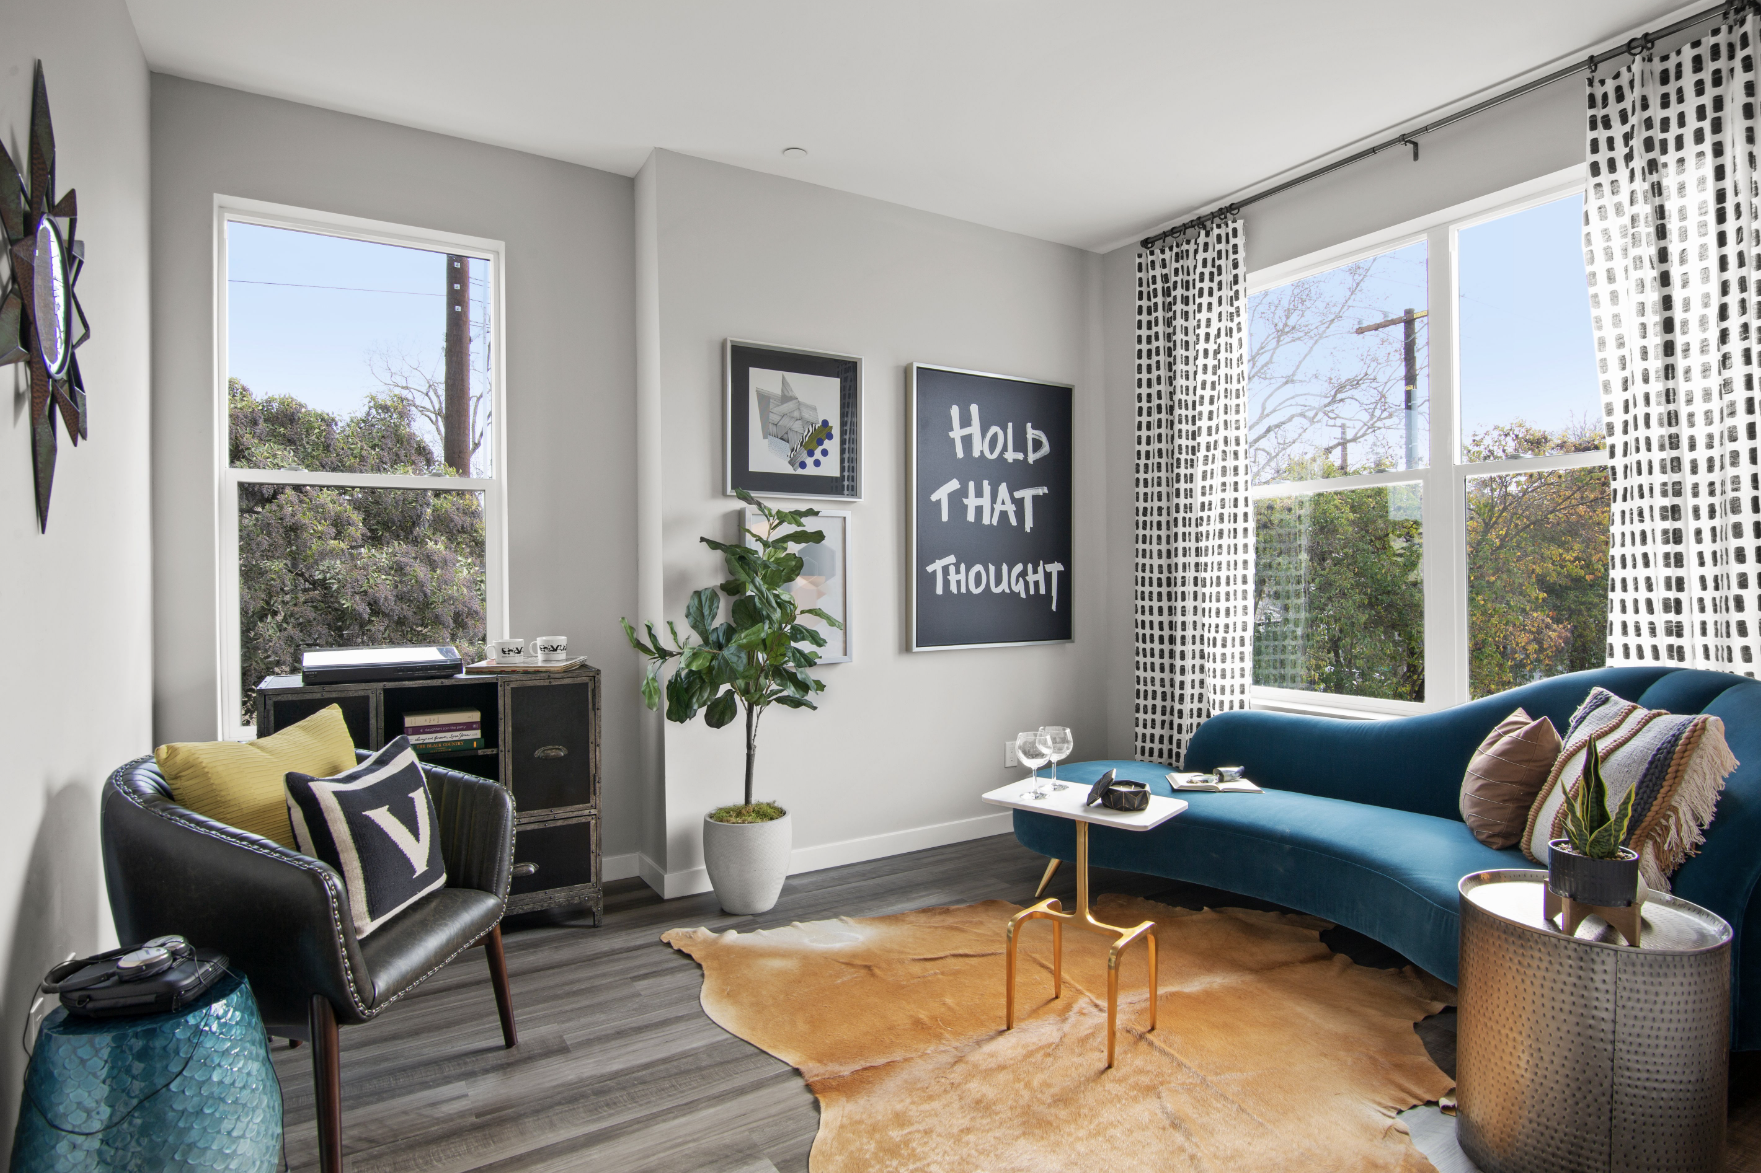 Small Studio Apartment Design: An Interior Designer's Favorite Tips 